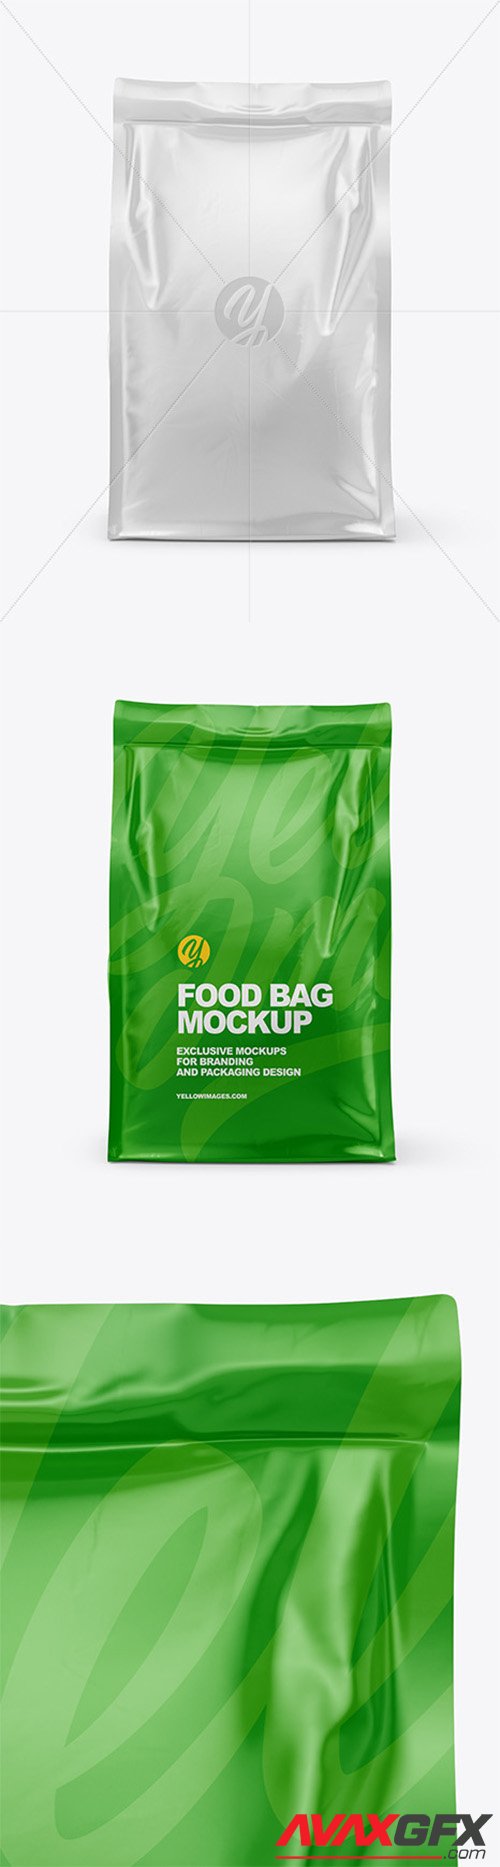 Glossy Food Bag Mockup - Front View 60620